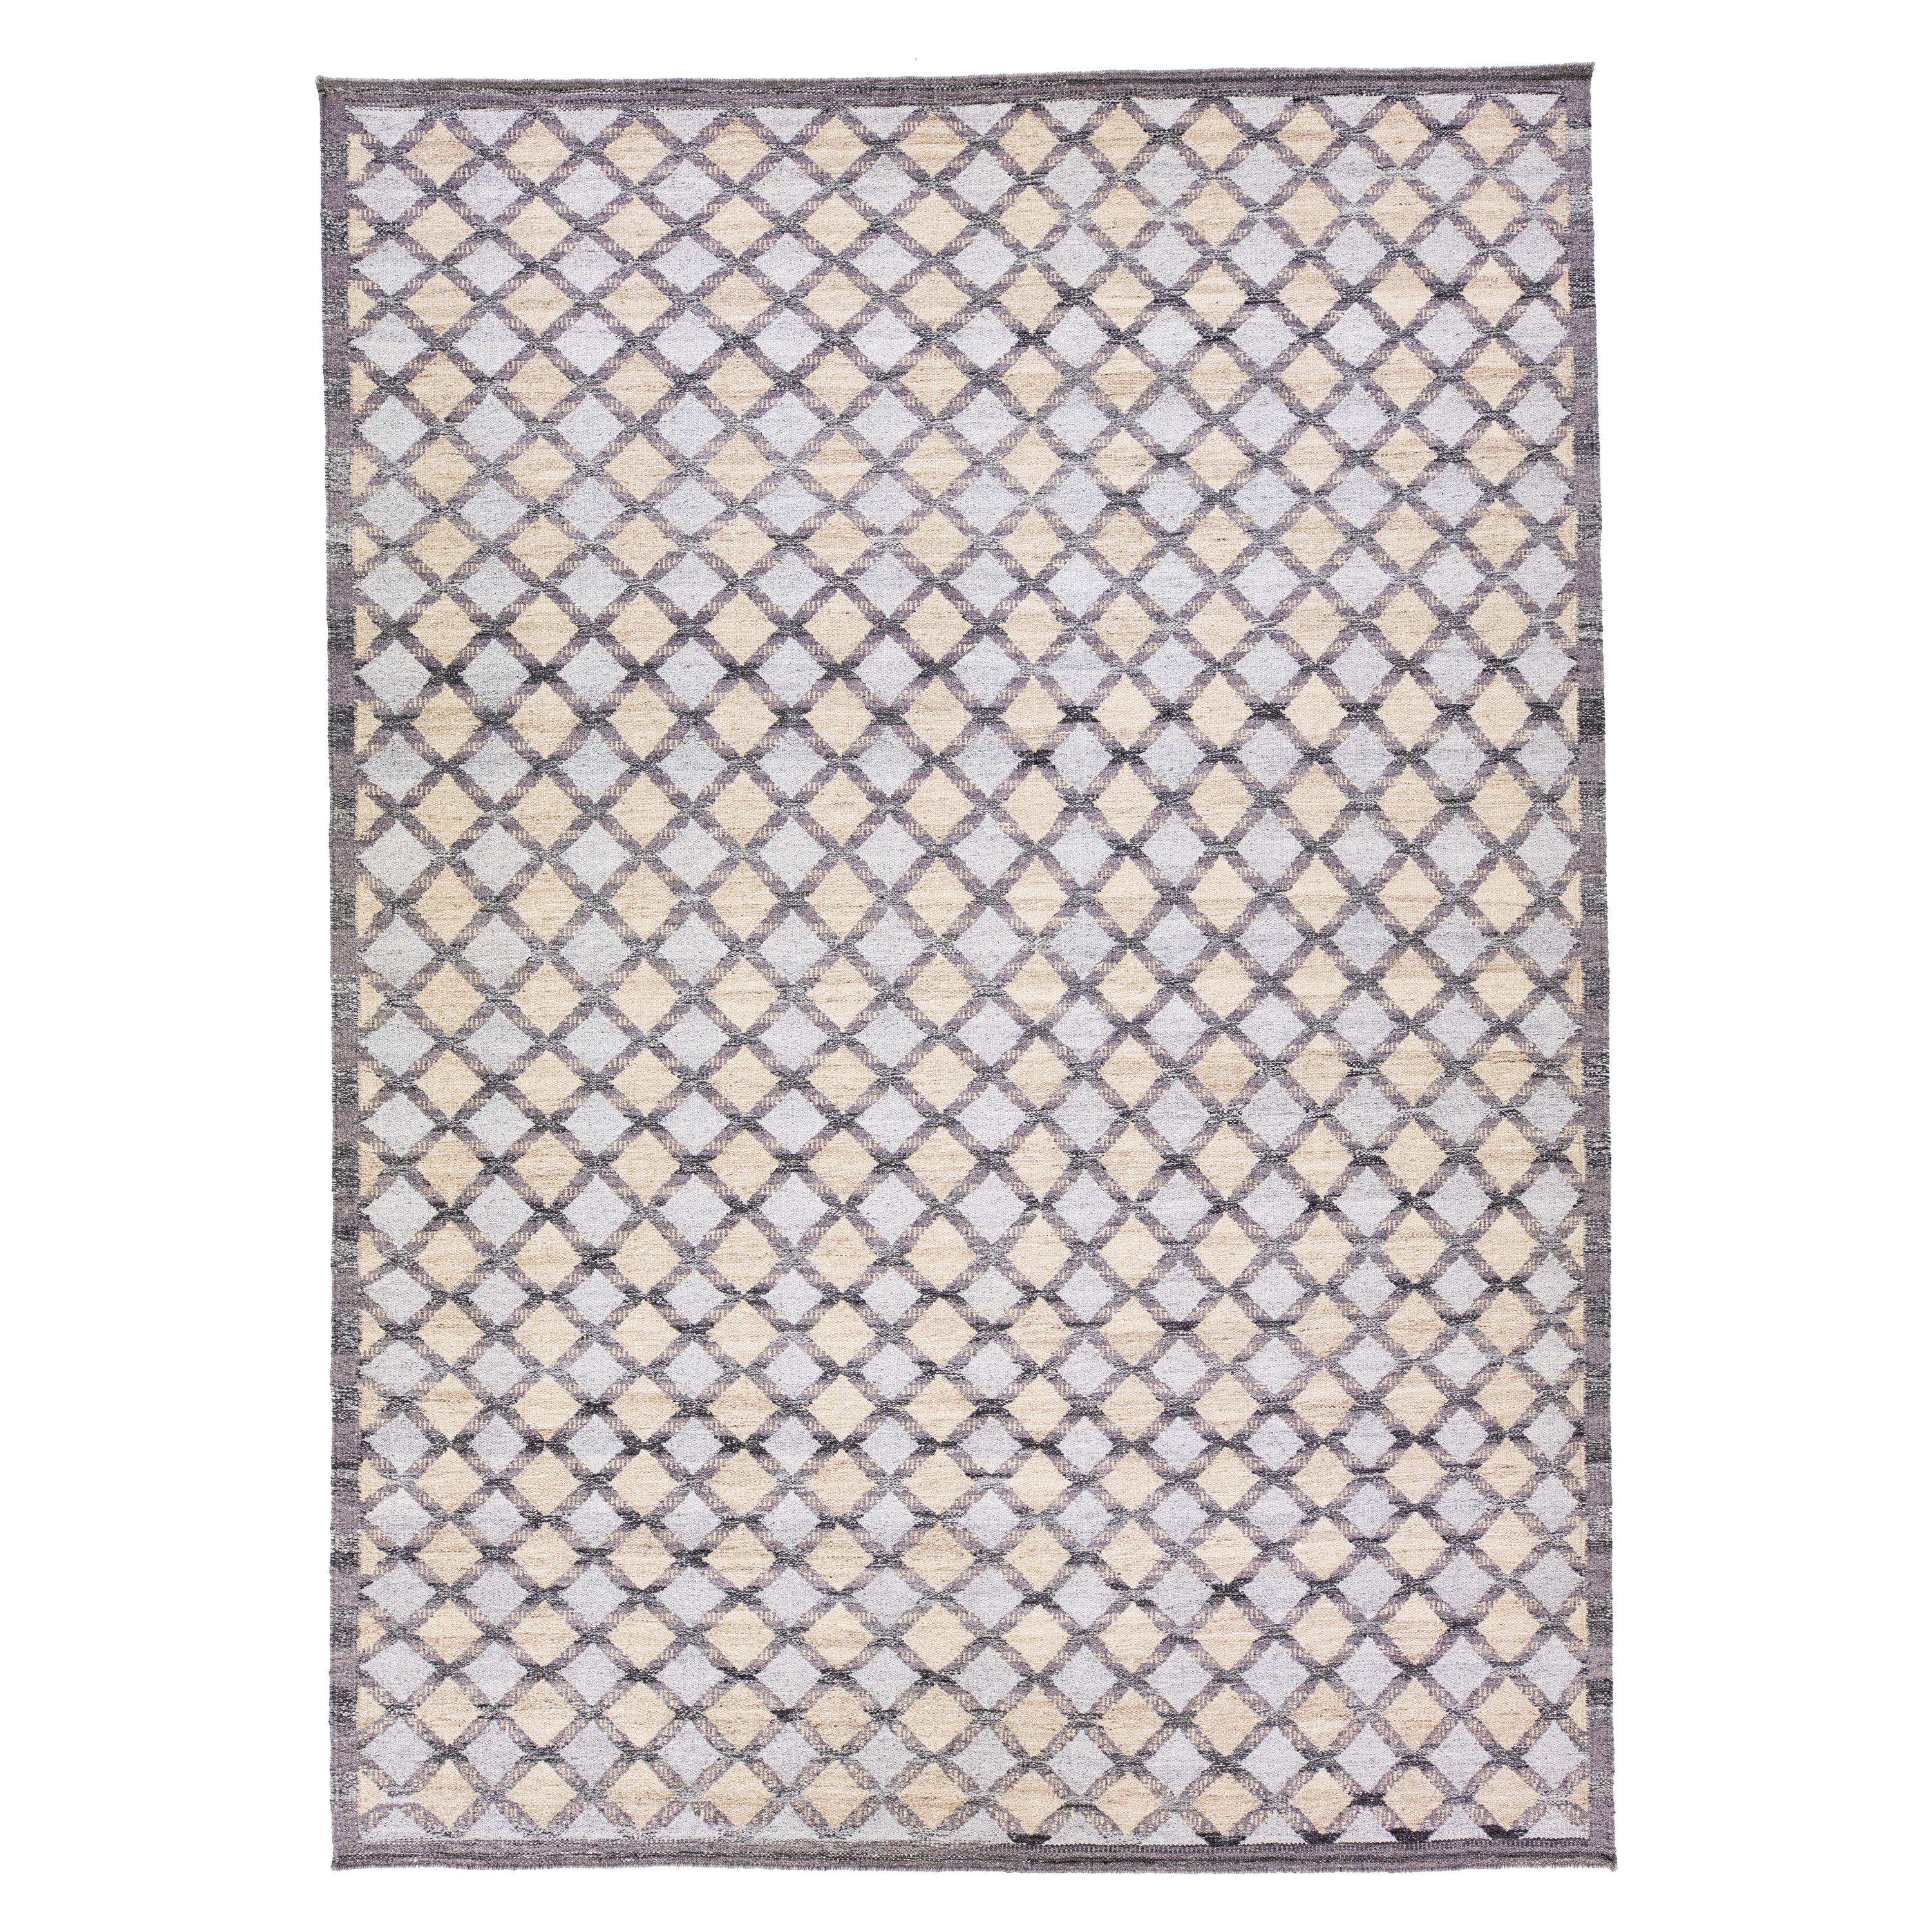 Tapis en laine géométrique de style suédois moderne, gris et beige, fait à la main